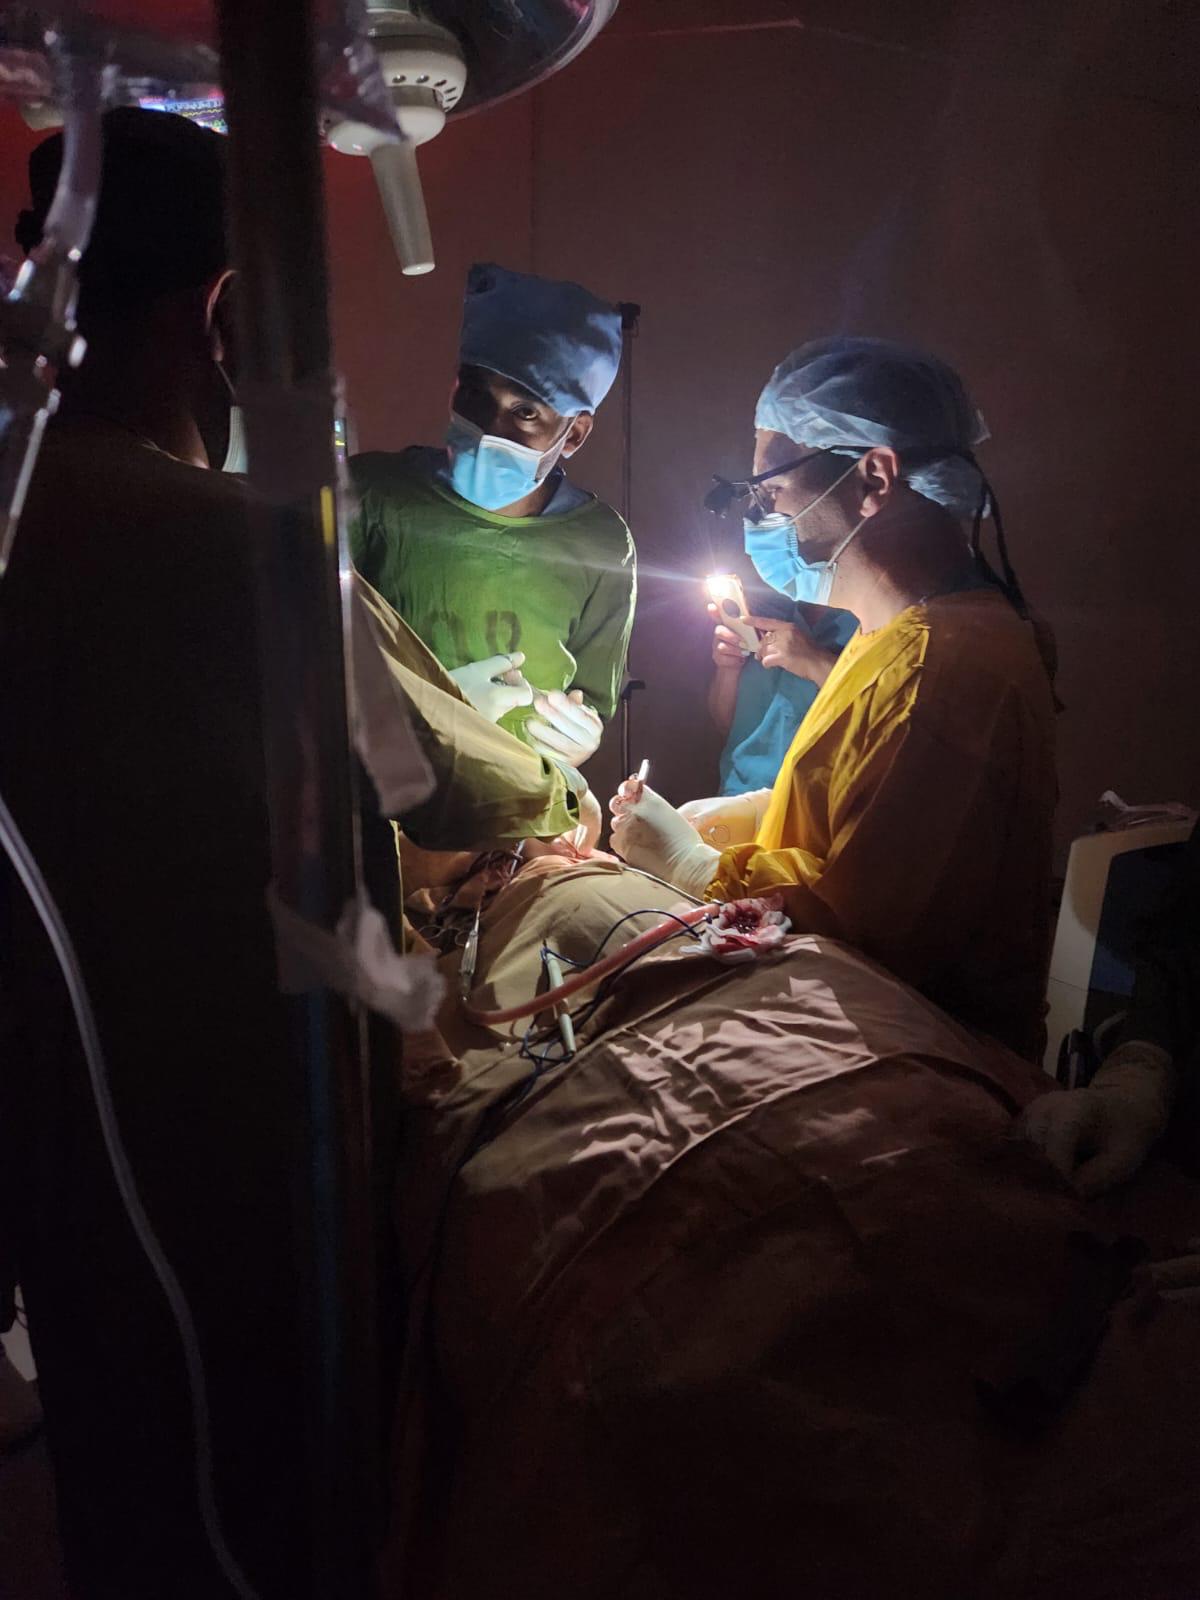 Realización de la cirugía con apoyo de las linternas de teléfonos inteligentes en el quirófano del Hospital St. Peter's en Etiopía. Foto: Cortesía de la Dra. Vasila Rechea.